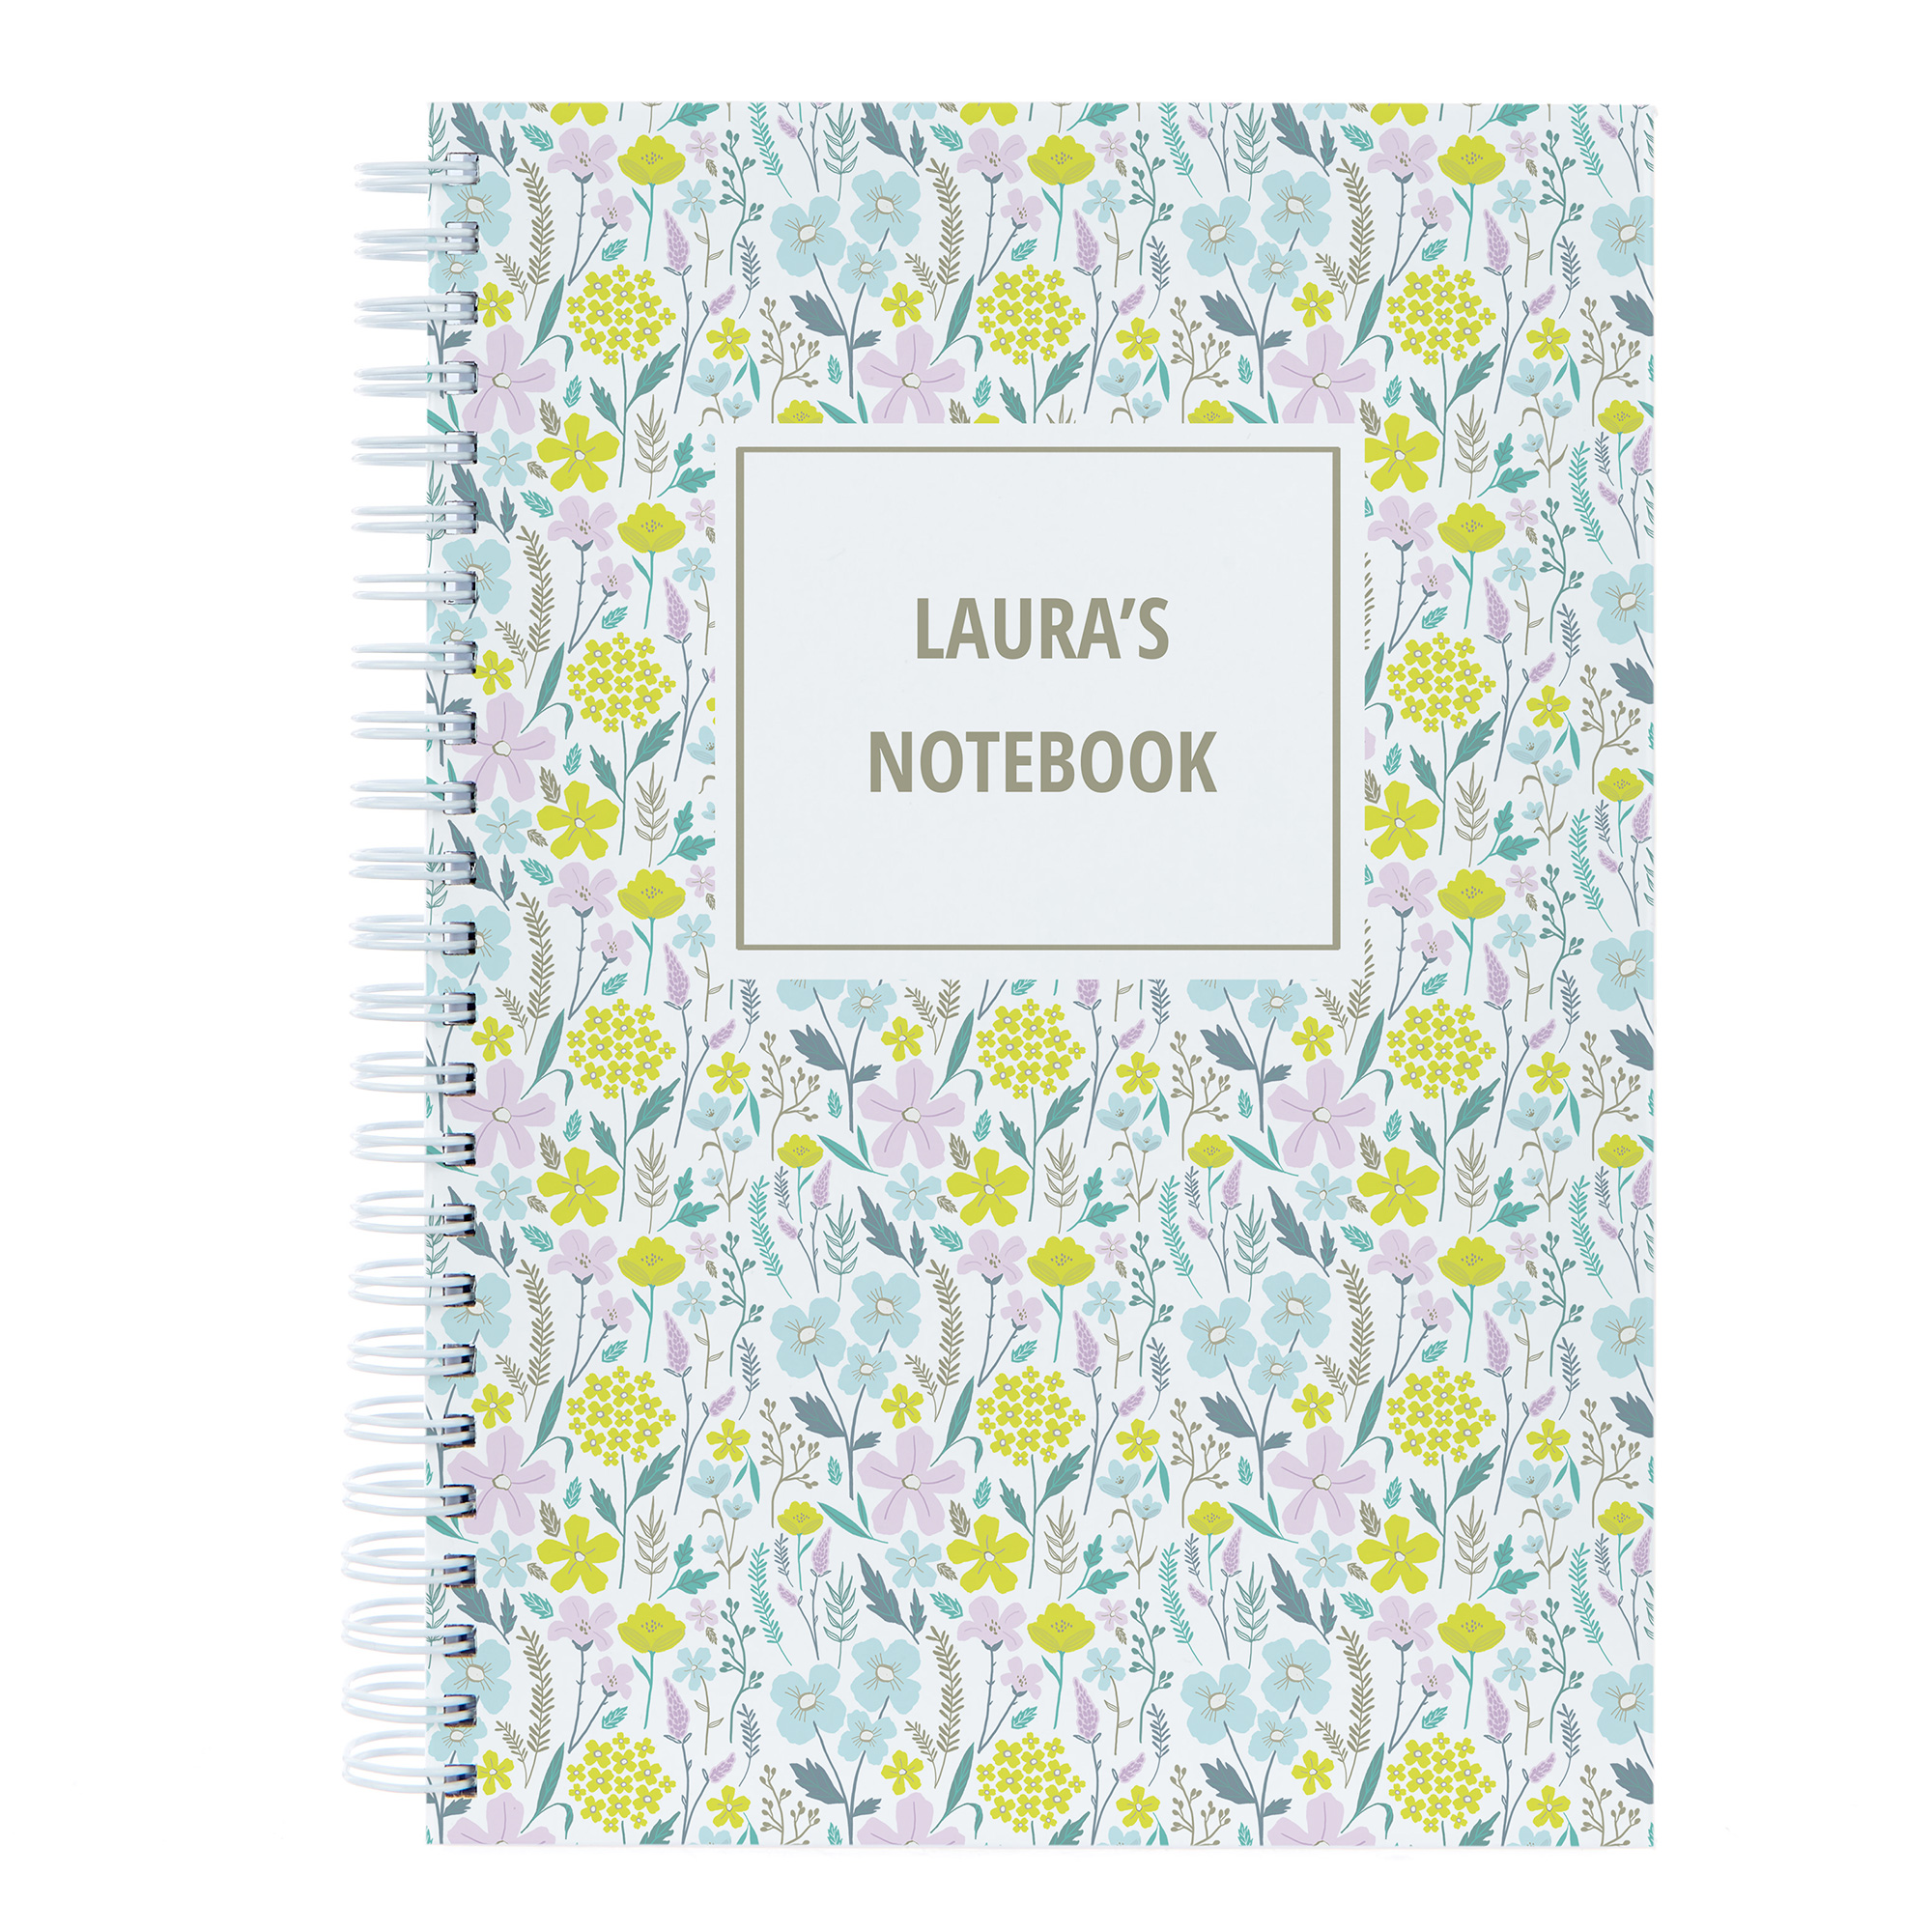 Personalised Notebook - Flowers Pattern